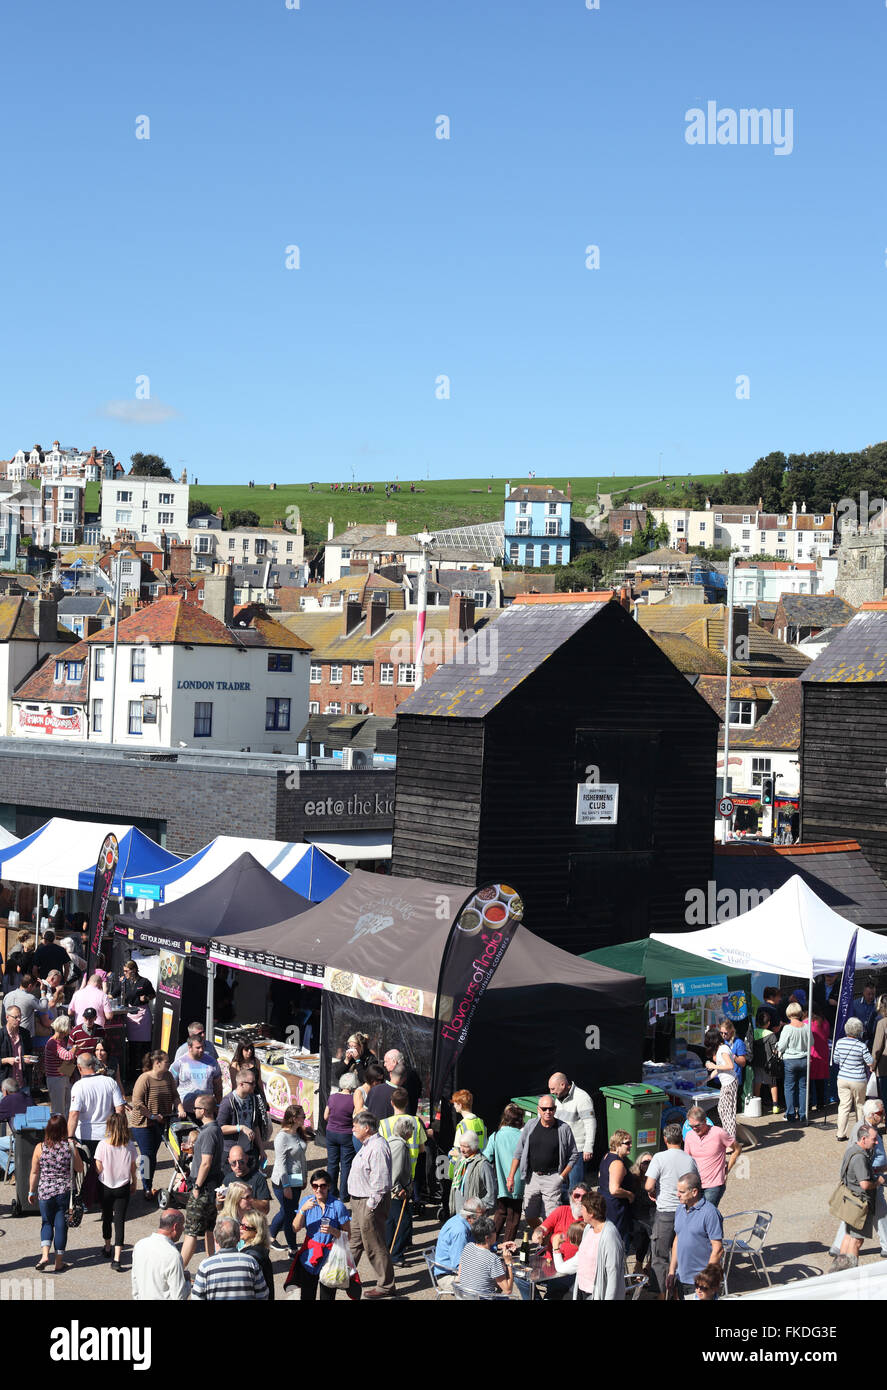 Hastings beschäftigt Seafood Festival auf dem Stade mit der West-Hügel im Hintergrund, East Sussex, Großbritannien Stockfoto